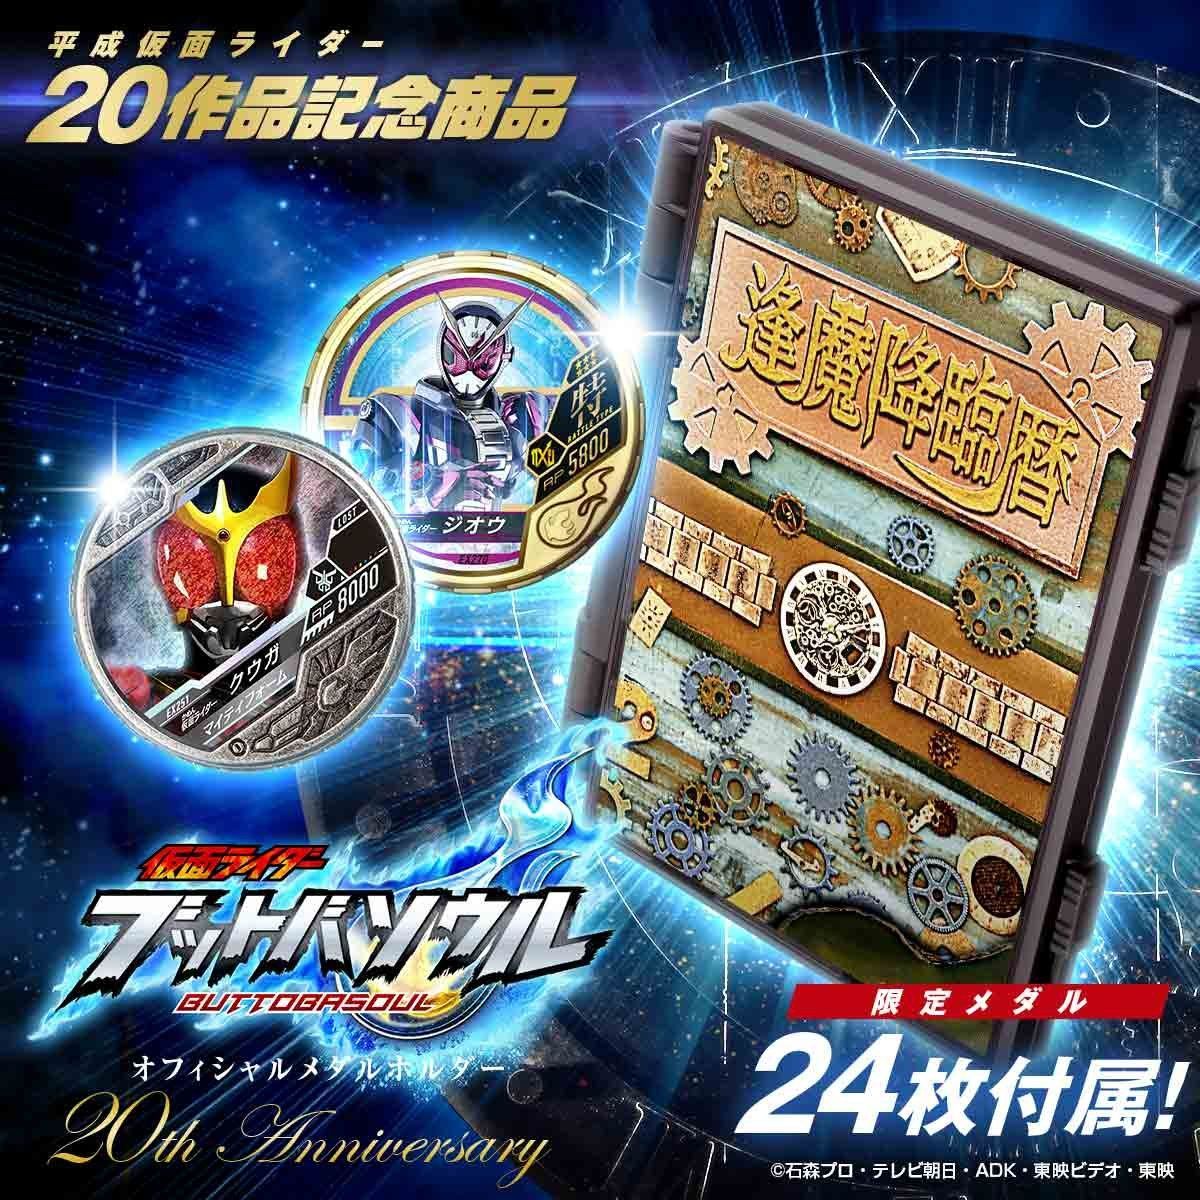 仮面ライダー ブットバソウル『オフィシャルメダルホルダー -20th Anniversary-』-001